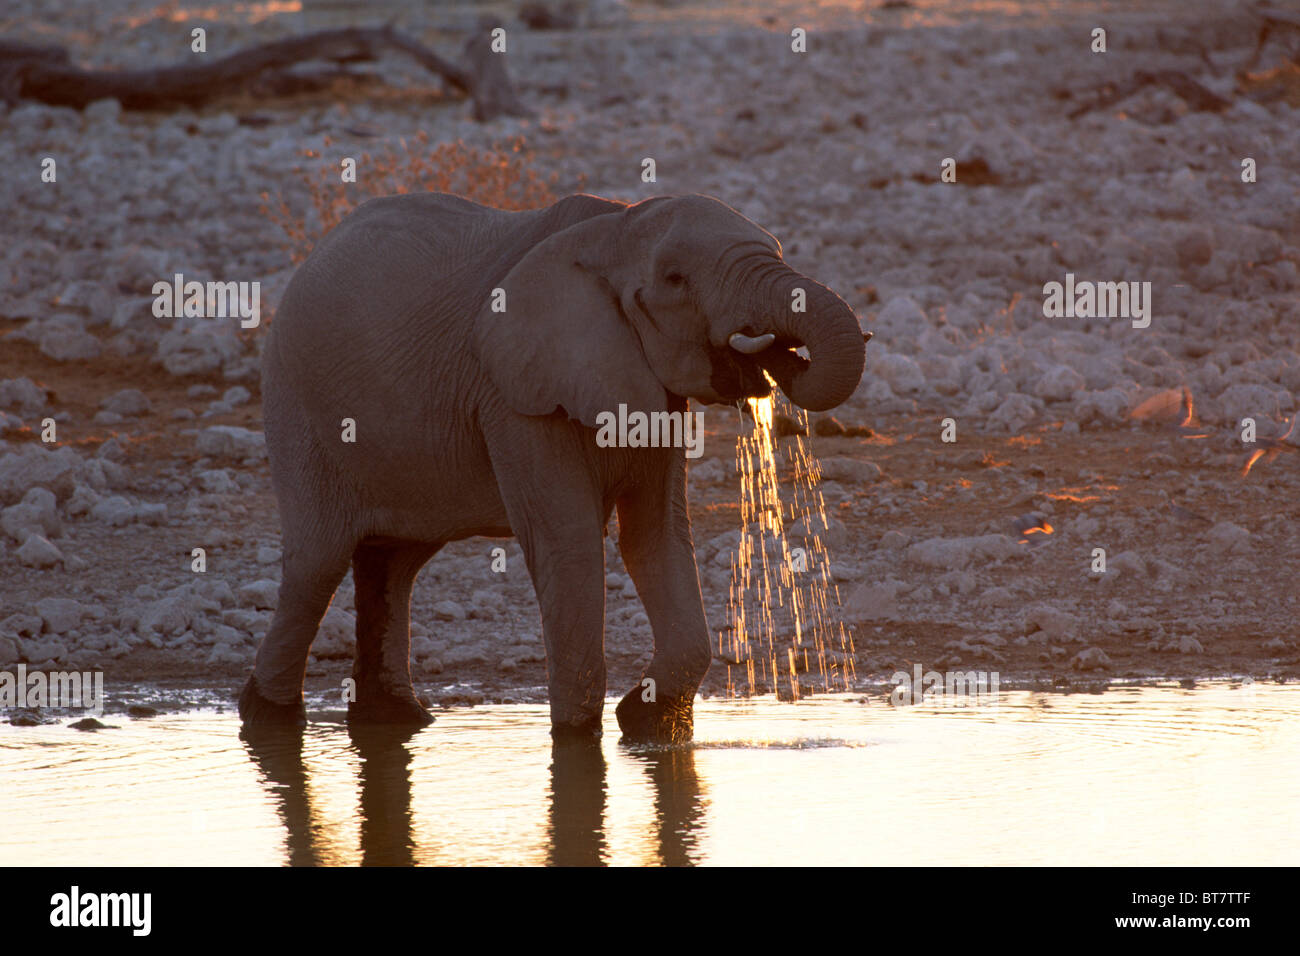 African Bush Elephant (Loxodonta africana) drinking water in the last evening light, Etosha National Park, Namibia, Africa Stock Photo